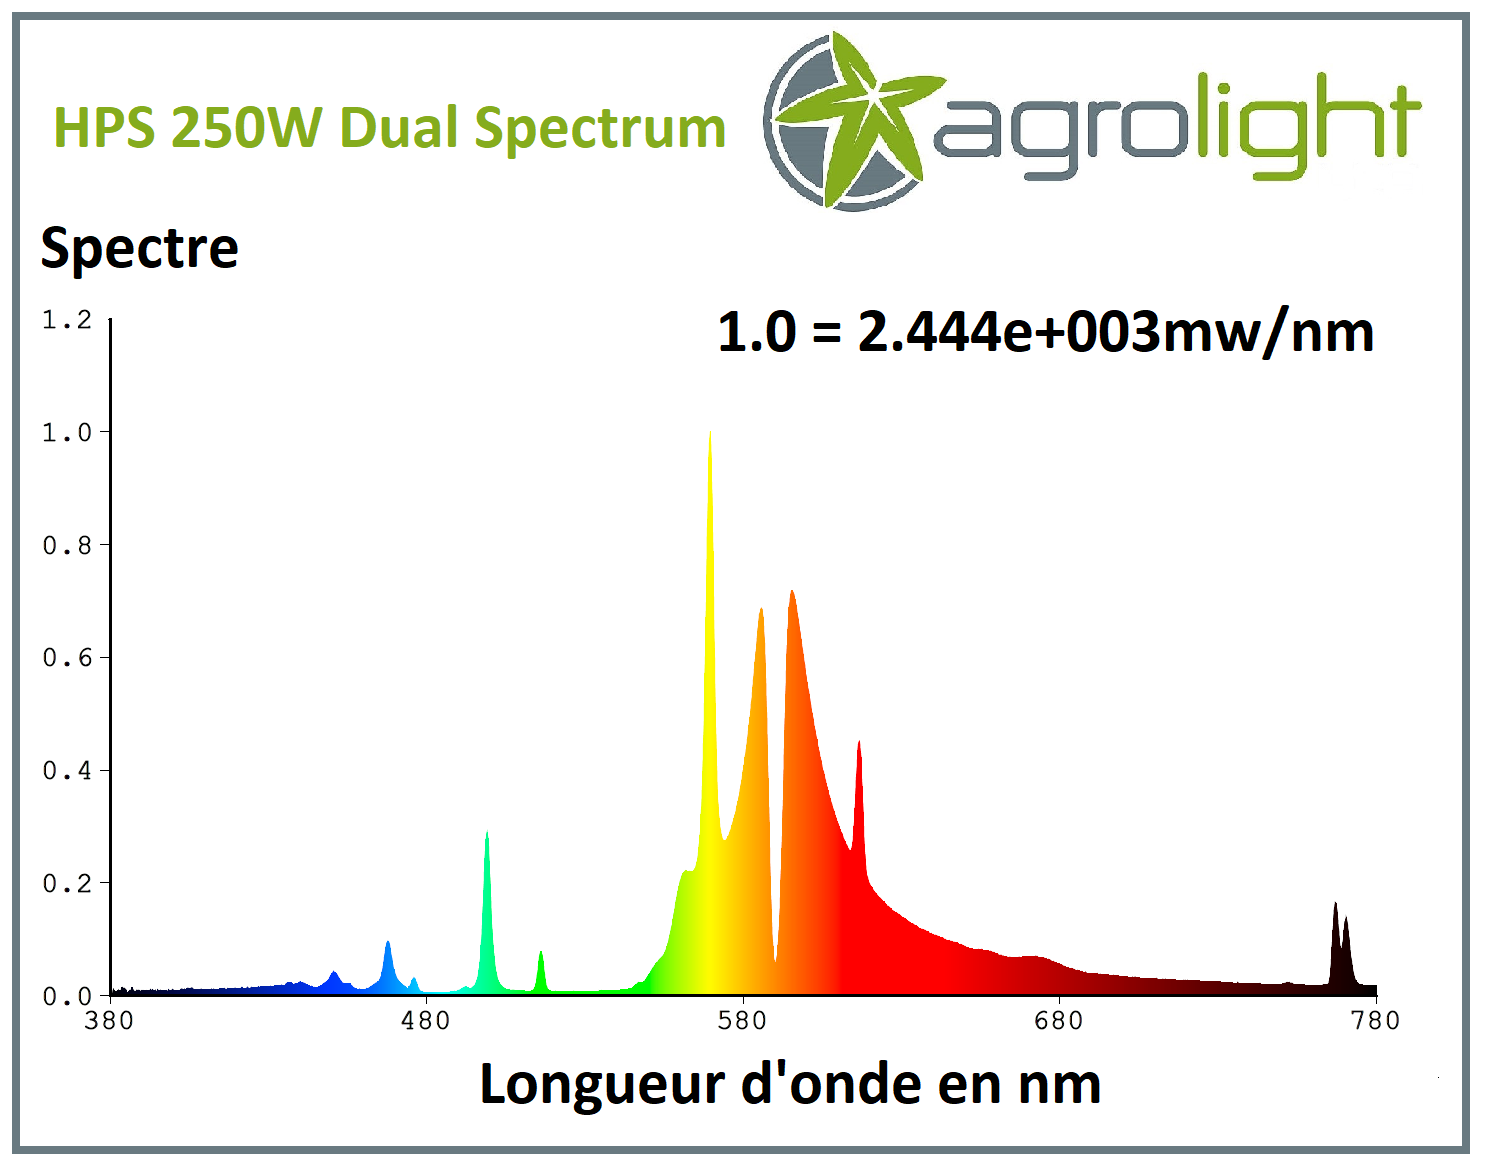 Longueur d'onde en nm de la lampe HPS 250W Agrolight